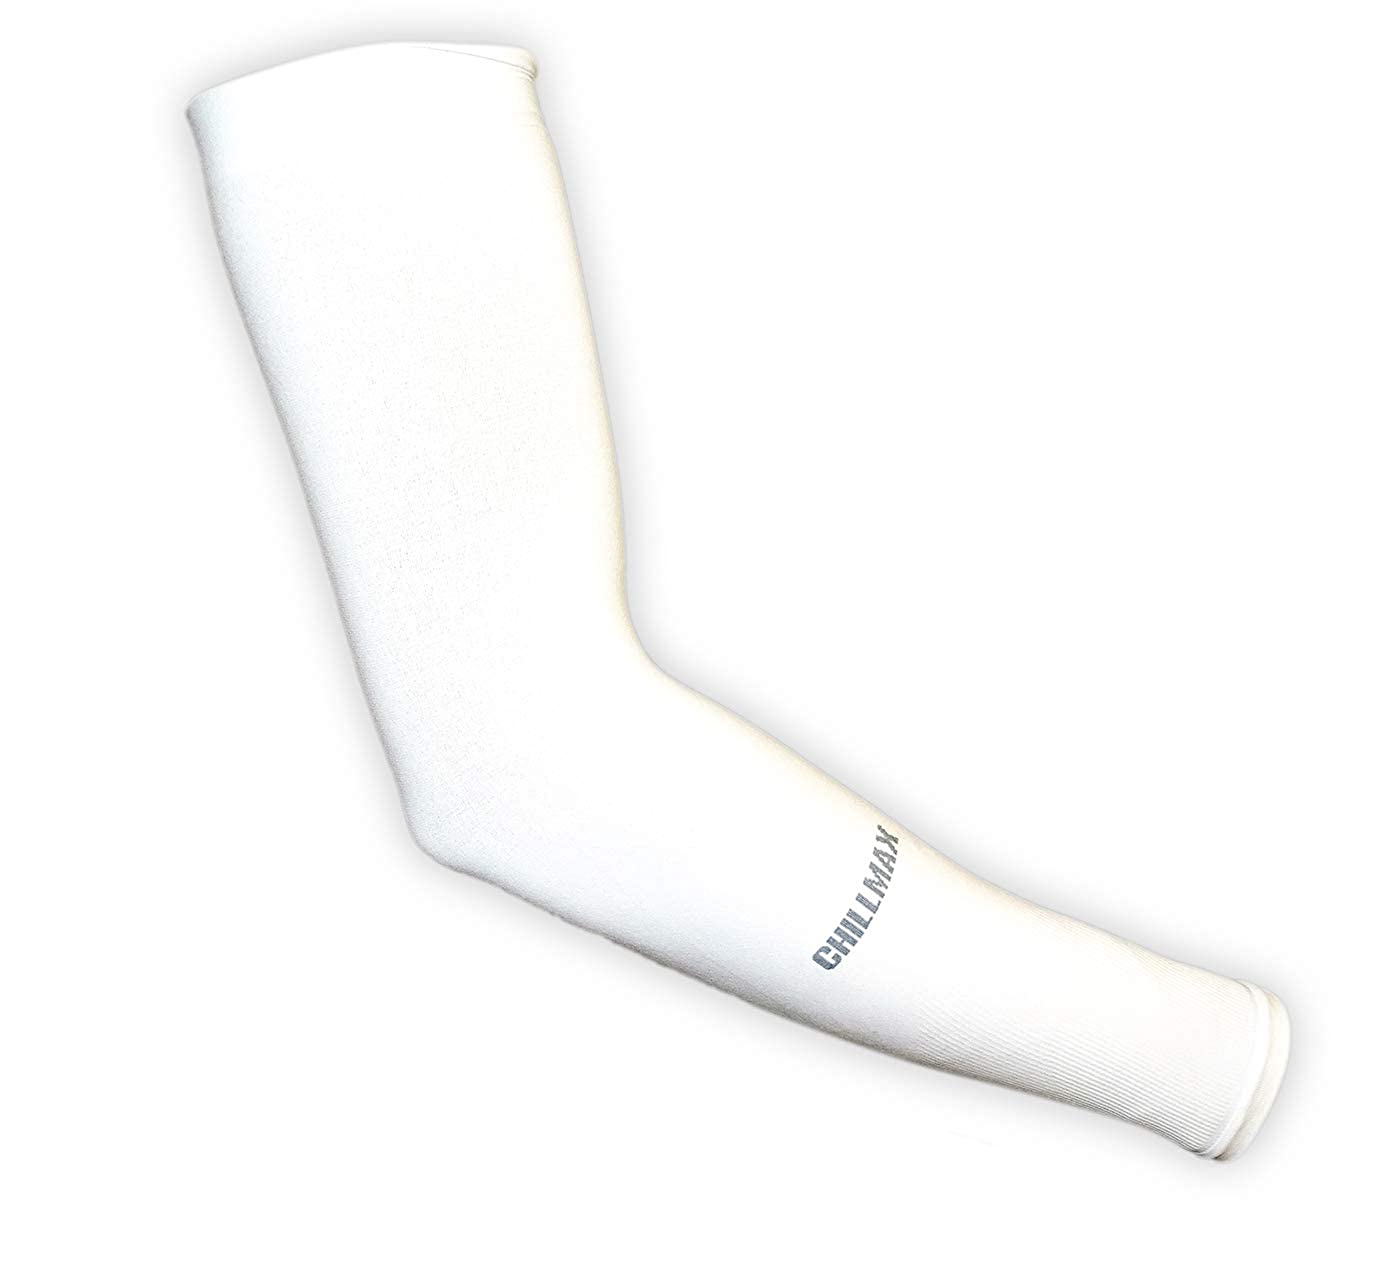 Chillmax Arm Sleeves (White)